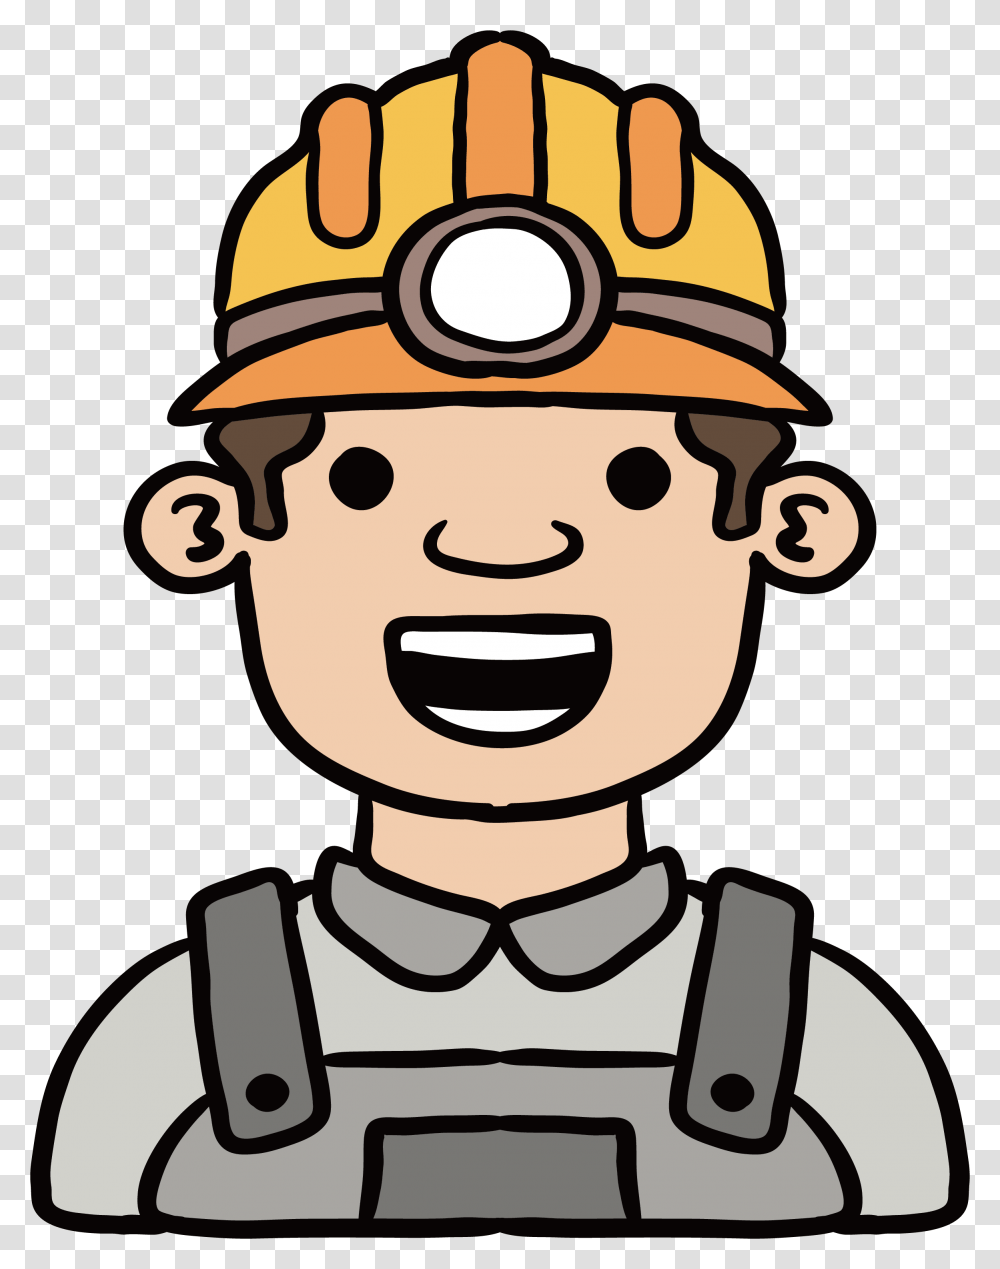 Coal Miner Clipart, Fireman Transparent Png